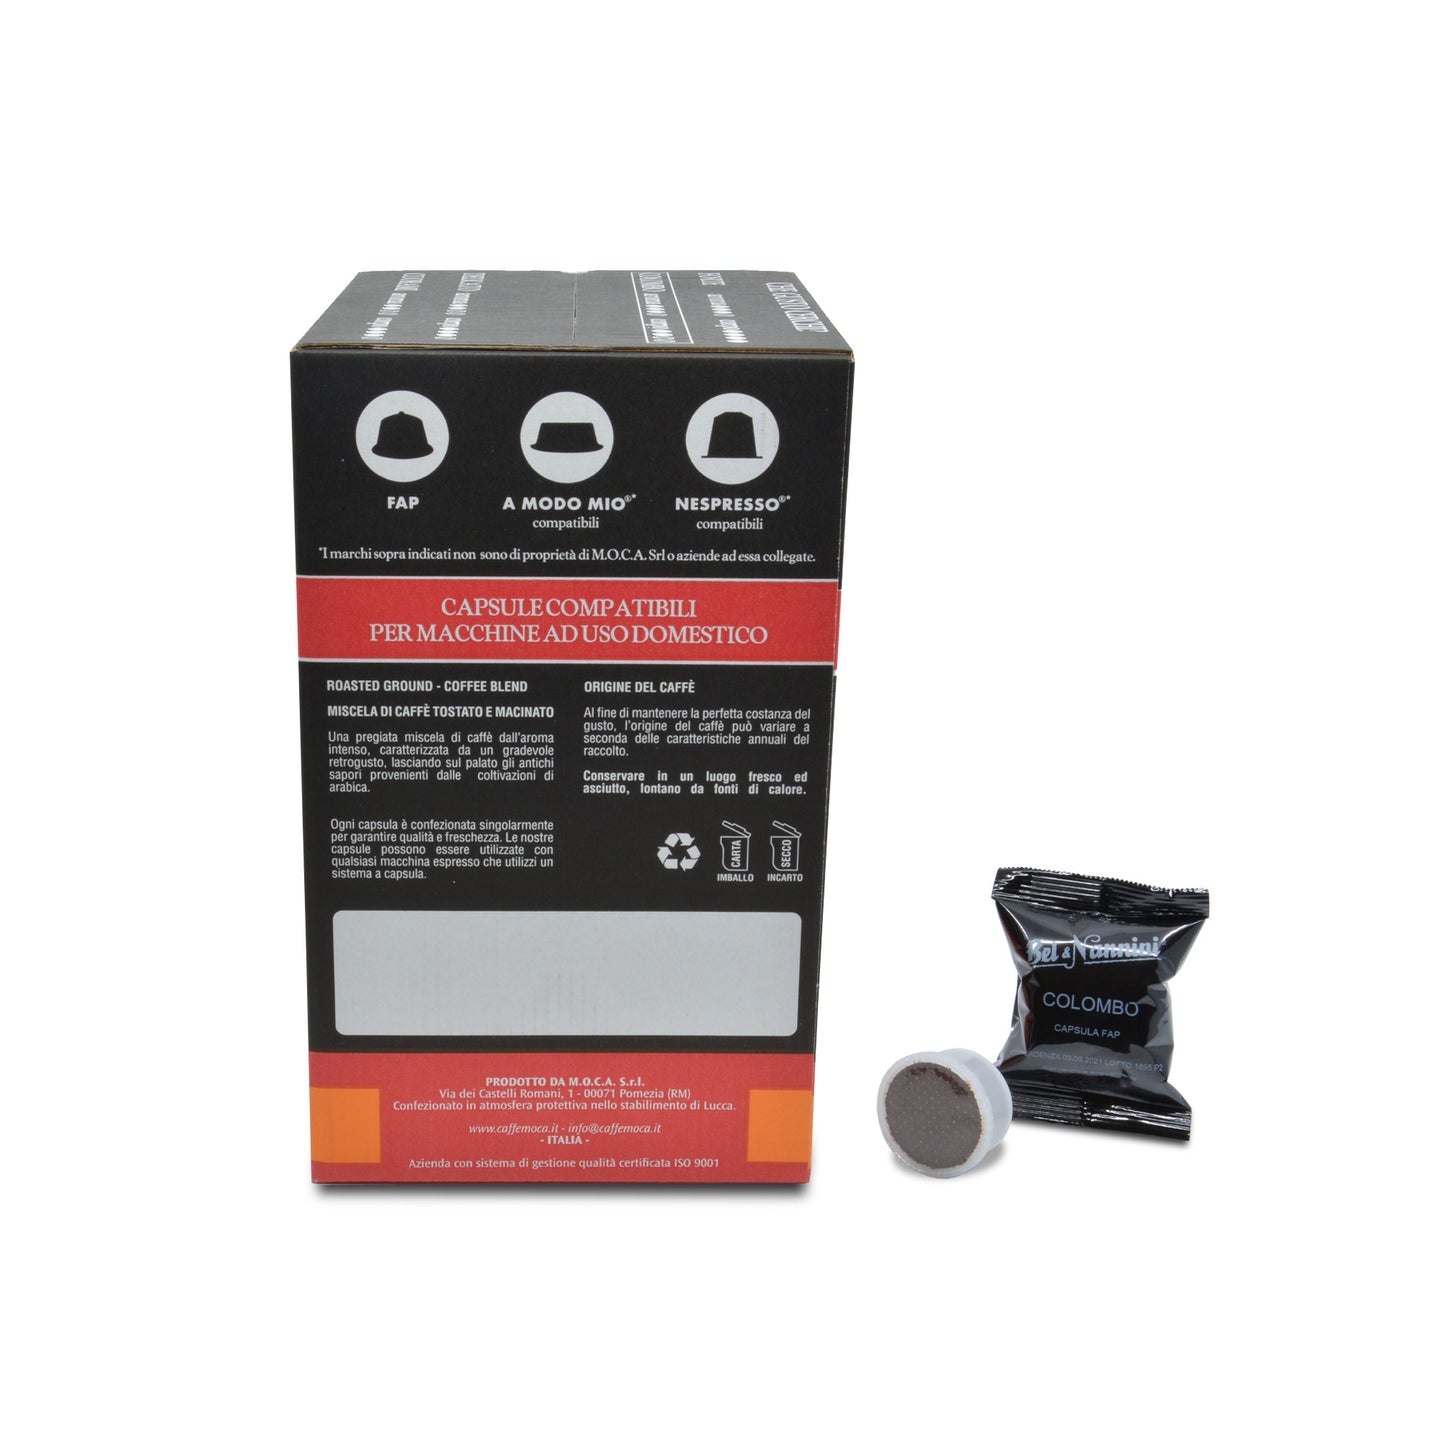 
                  
                    Gran Miscela Colombo® - Capsule compatibili Espresso Point® Fap - scatola da 50 capsule - Pregiata miscela di caffè 100% arabica
                  
                